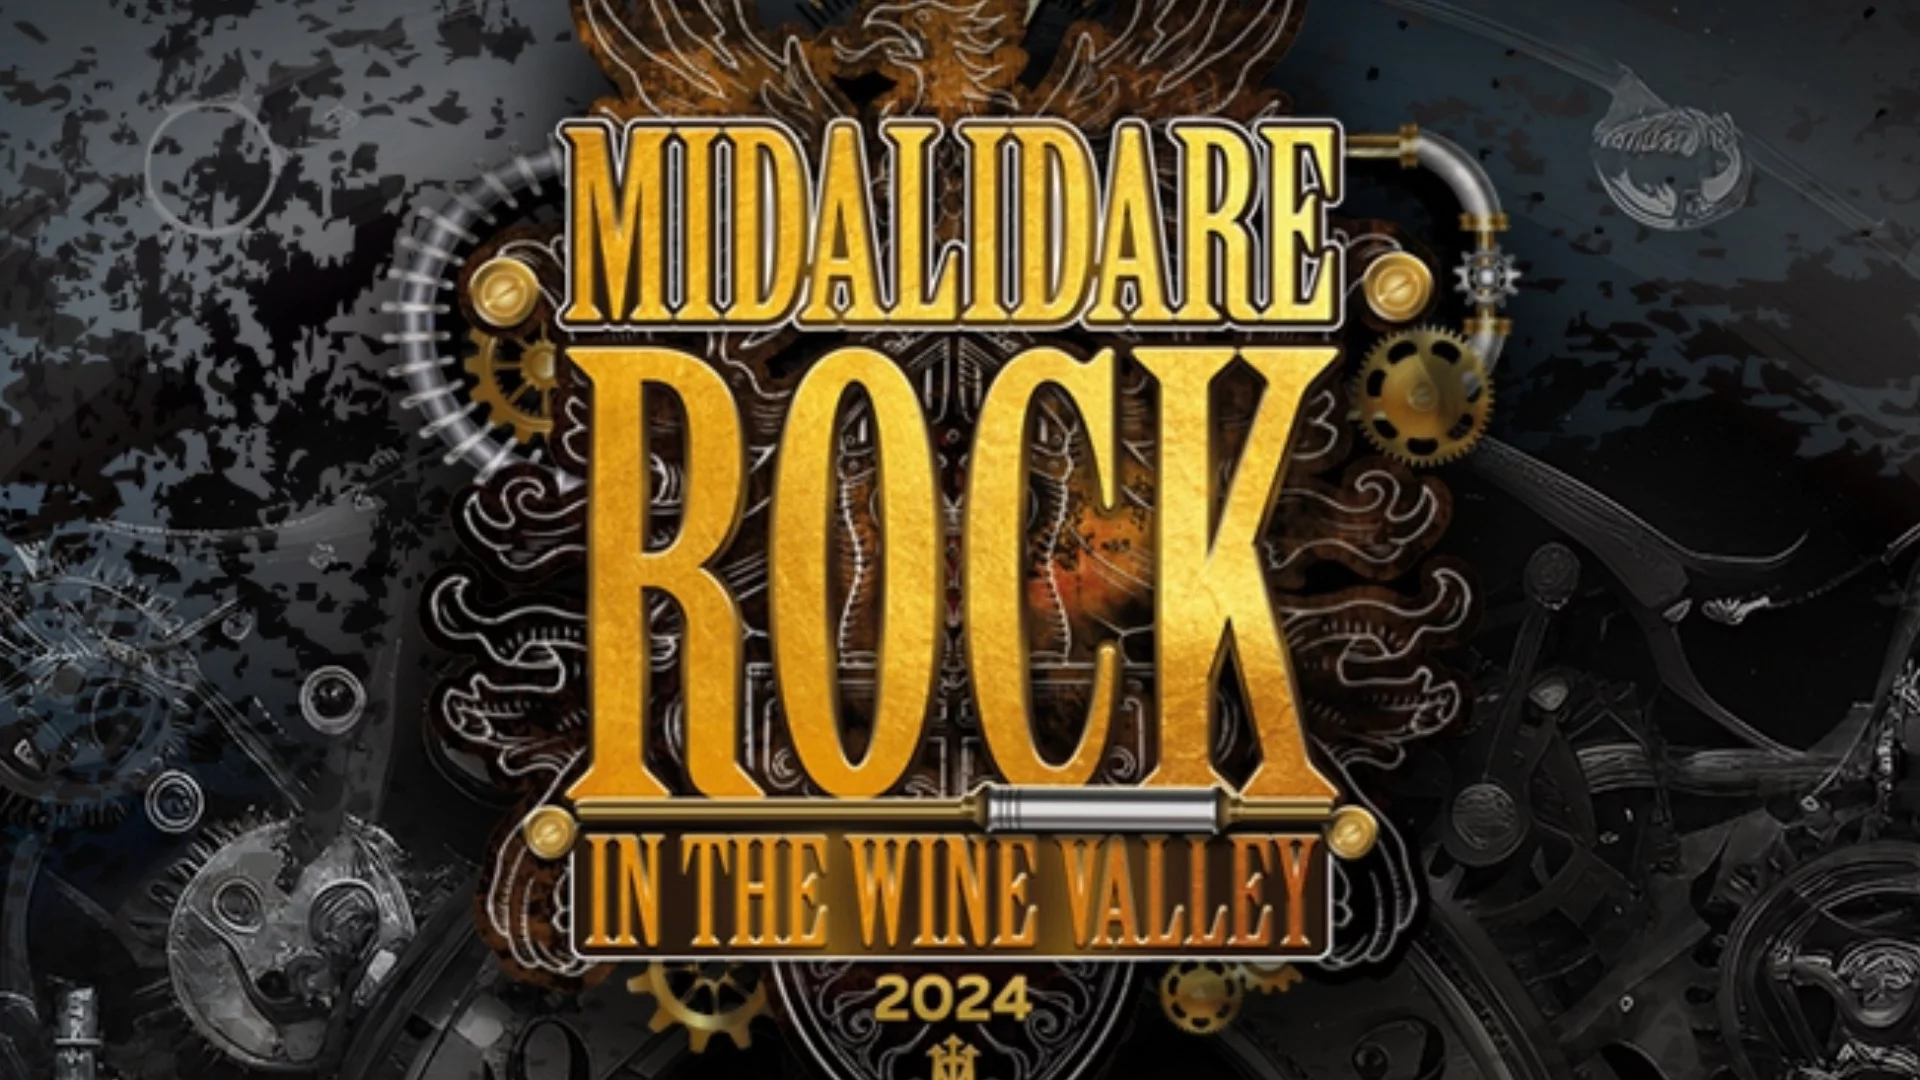 За феновете: Отново срещи с бандите на Midalidare Rock In The Wine Valley  